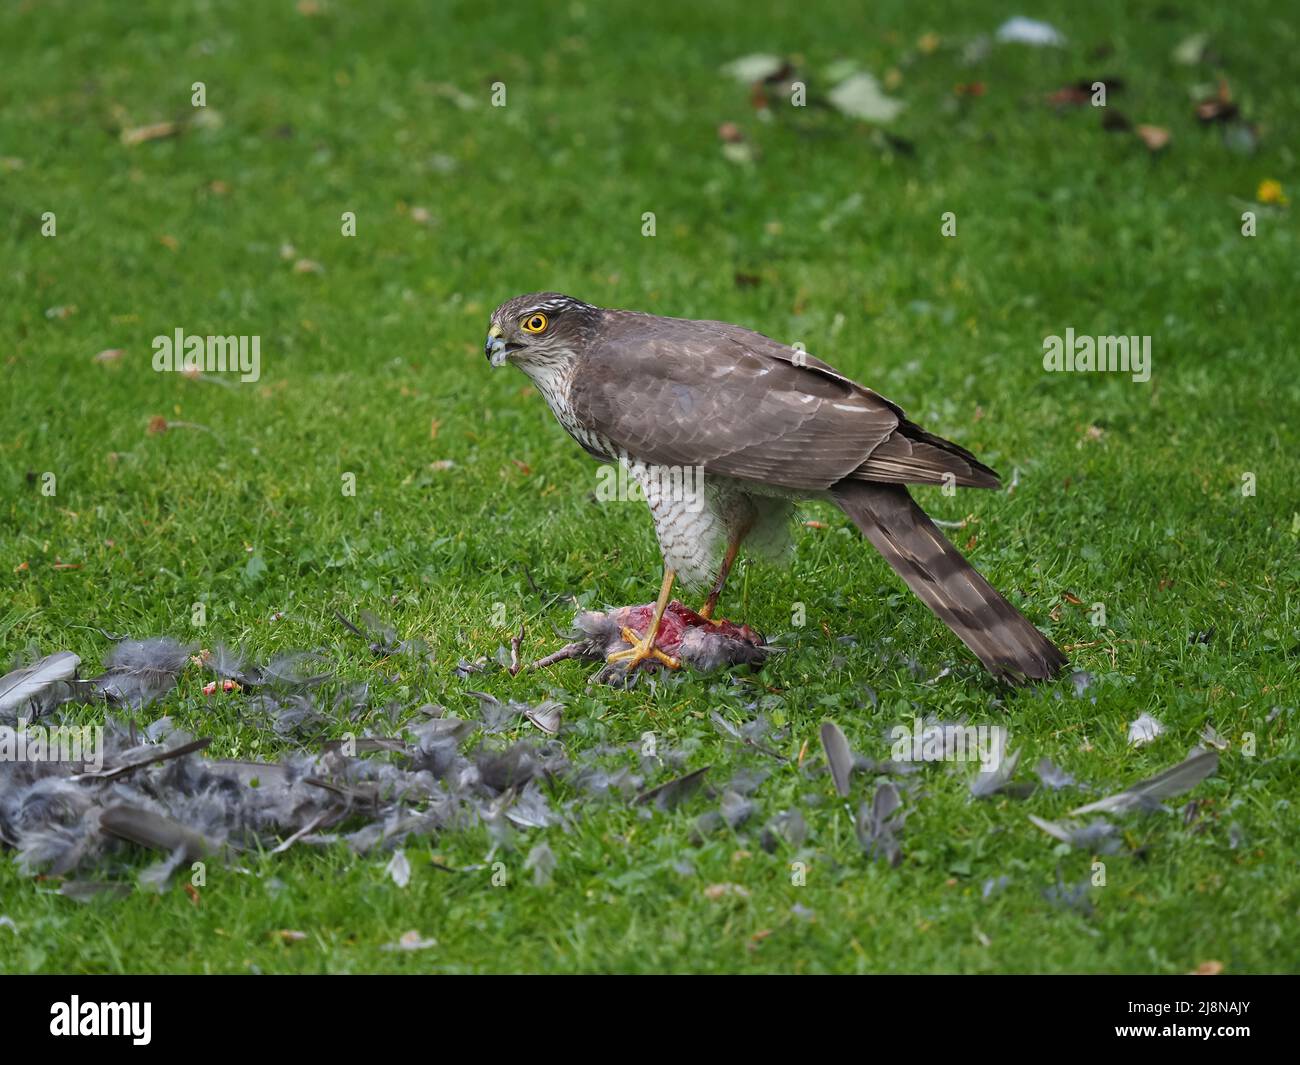 Sparrowhawk en una muerte en mi jardín donde saqueó a la presa y consumió mucho de ella antes de volar con los restos. Foto de stock